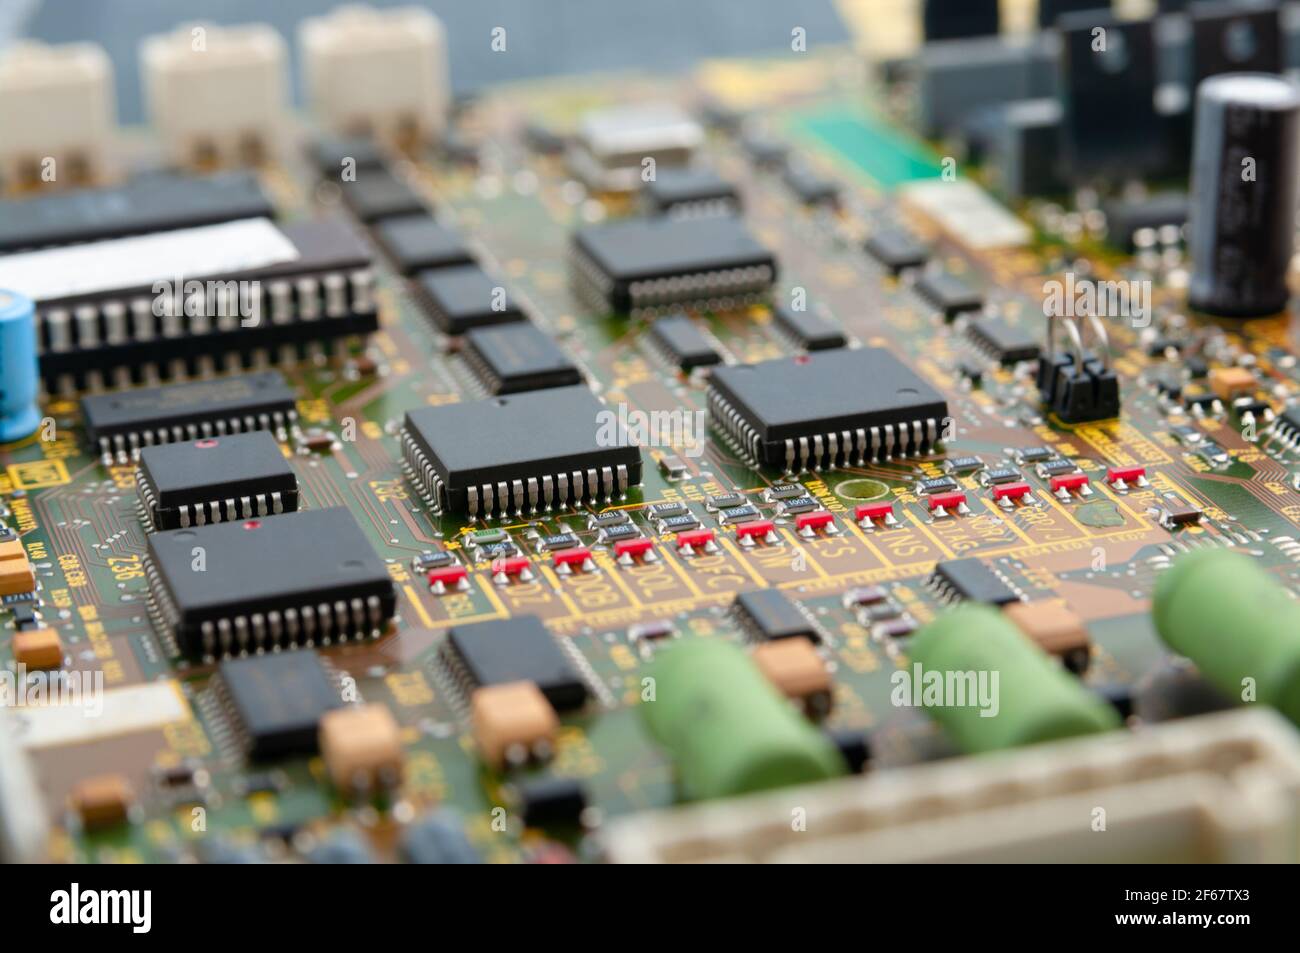 Gros plan de la carte de circuit imprimé électronique avec puce, processeur, circuits intégrés, résistances et connexions électroniques. Banque D'Images